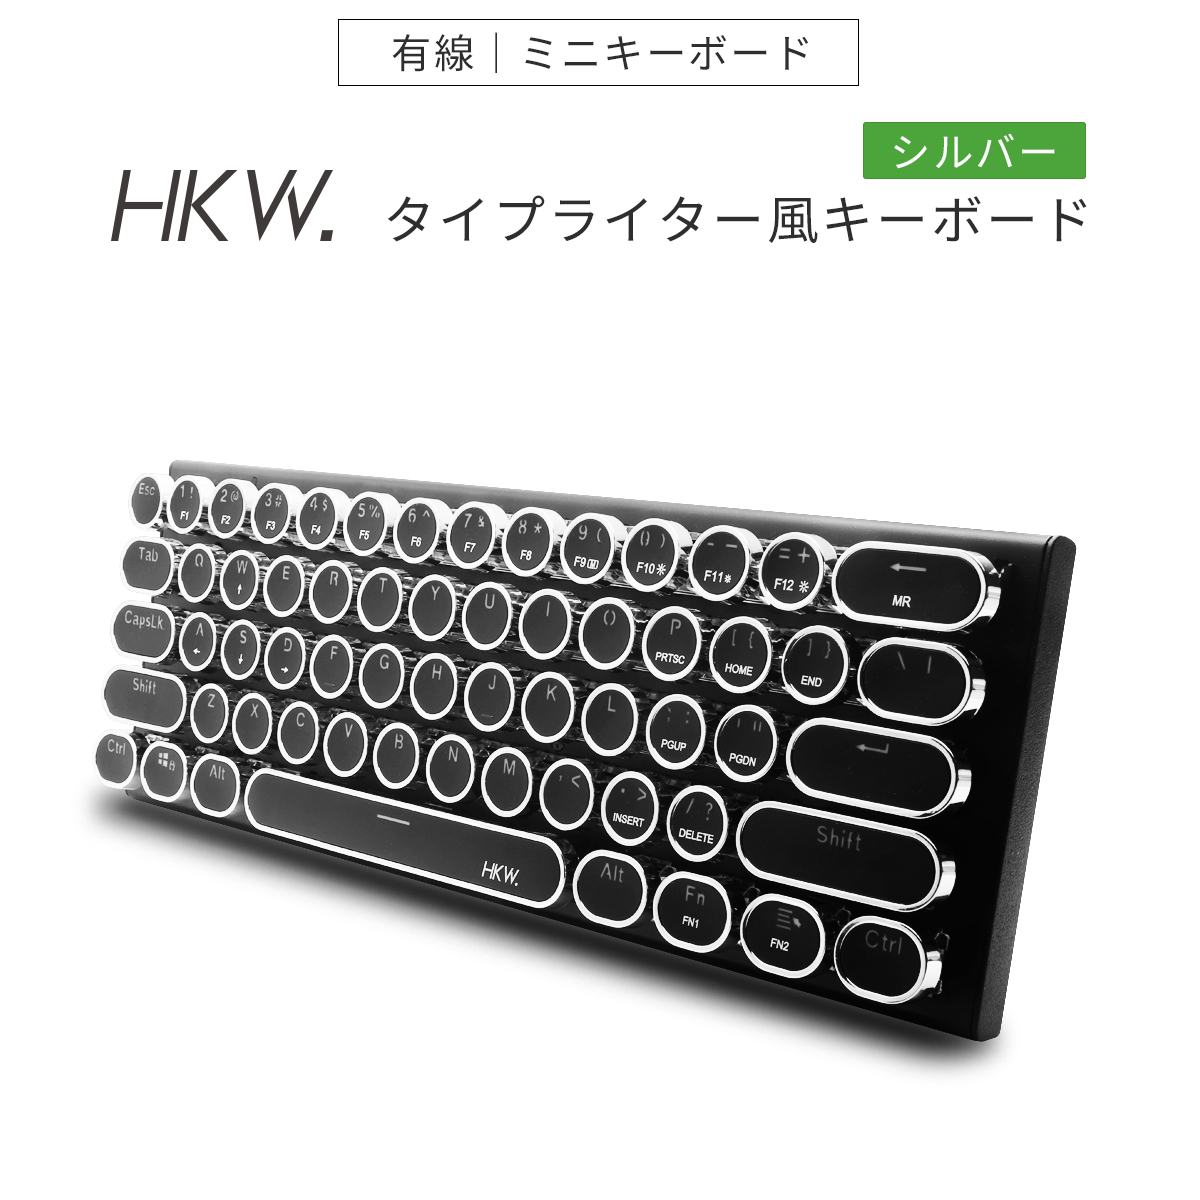 タイプライター風キーボード 有線 HKW メカニカルキーボード ミニ 